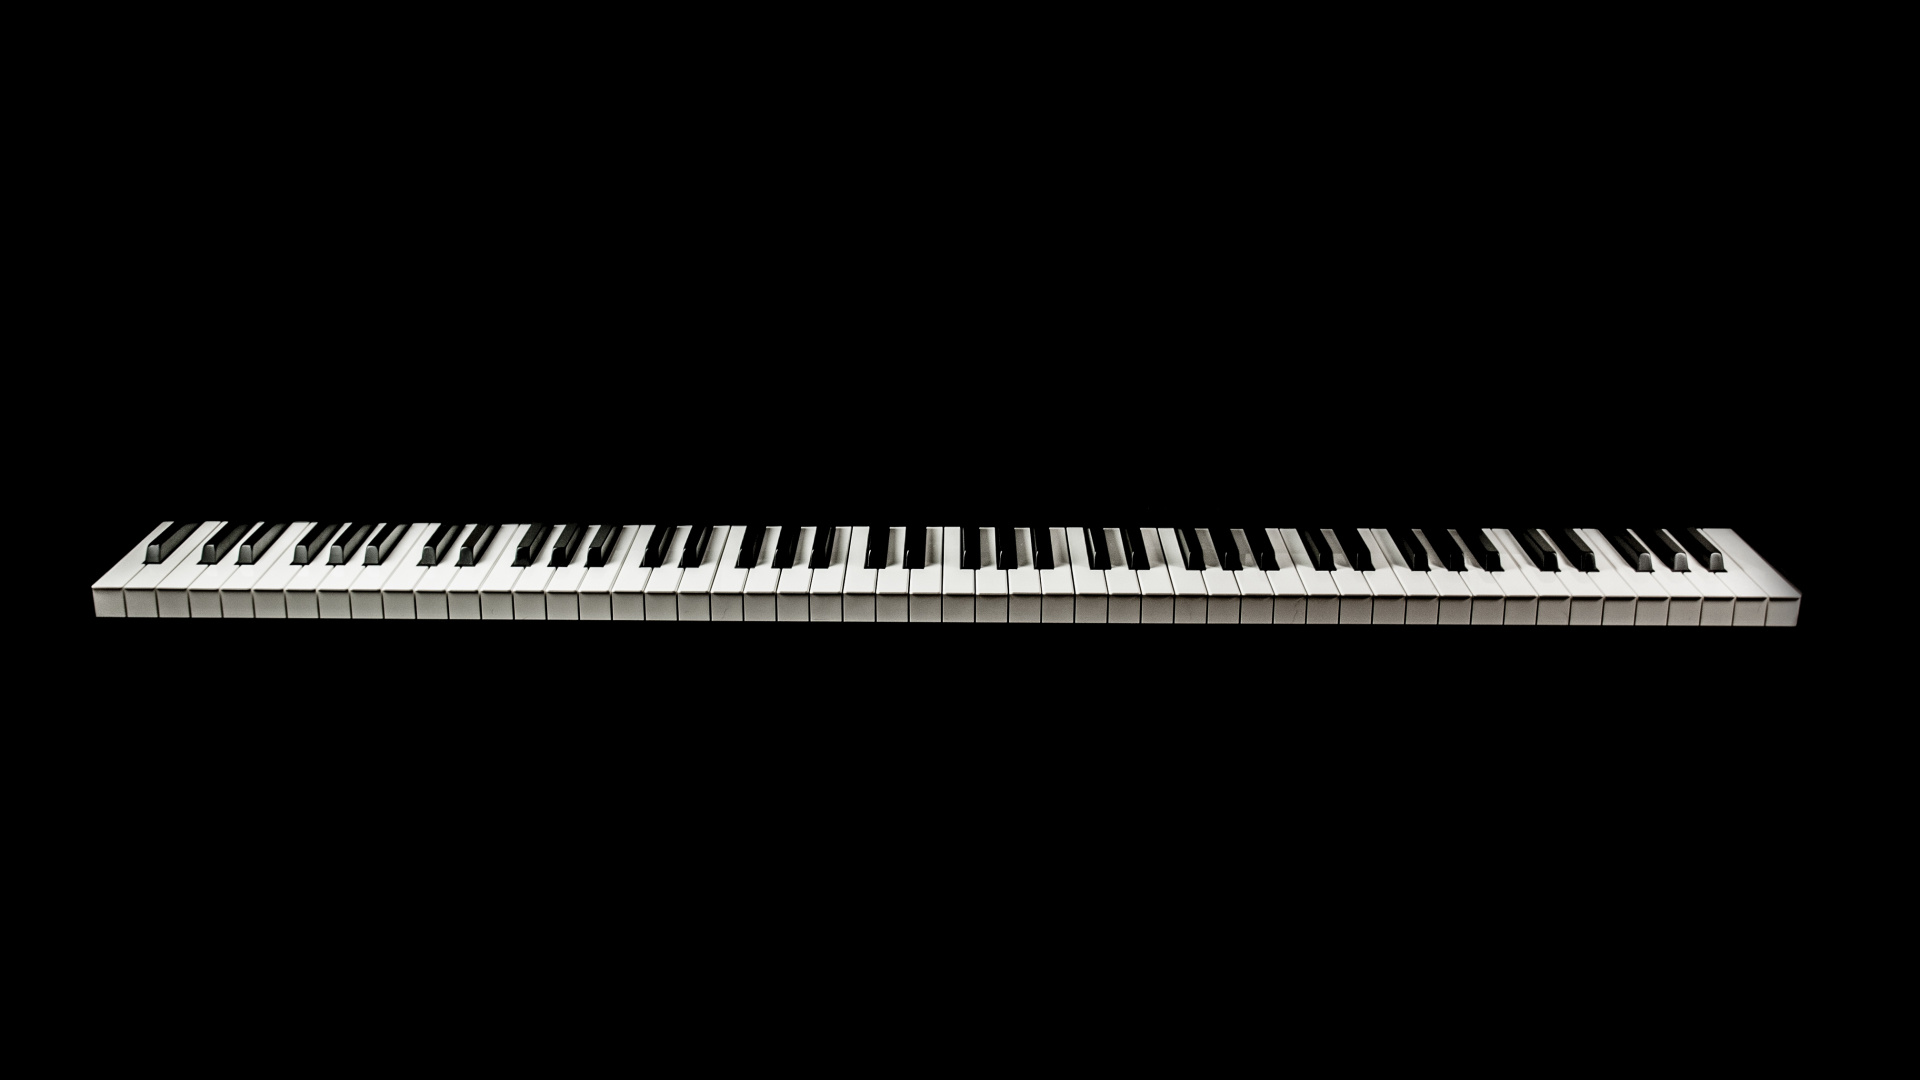 Musikalische Tastatur, Digitalpiano, E-piano, Klavier, Tastatur. Wallpaper in 1920x1080 Resolution